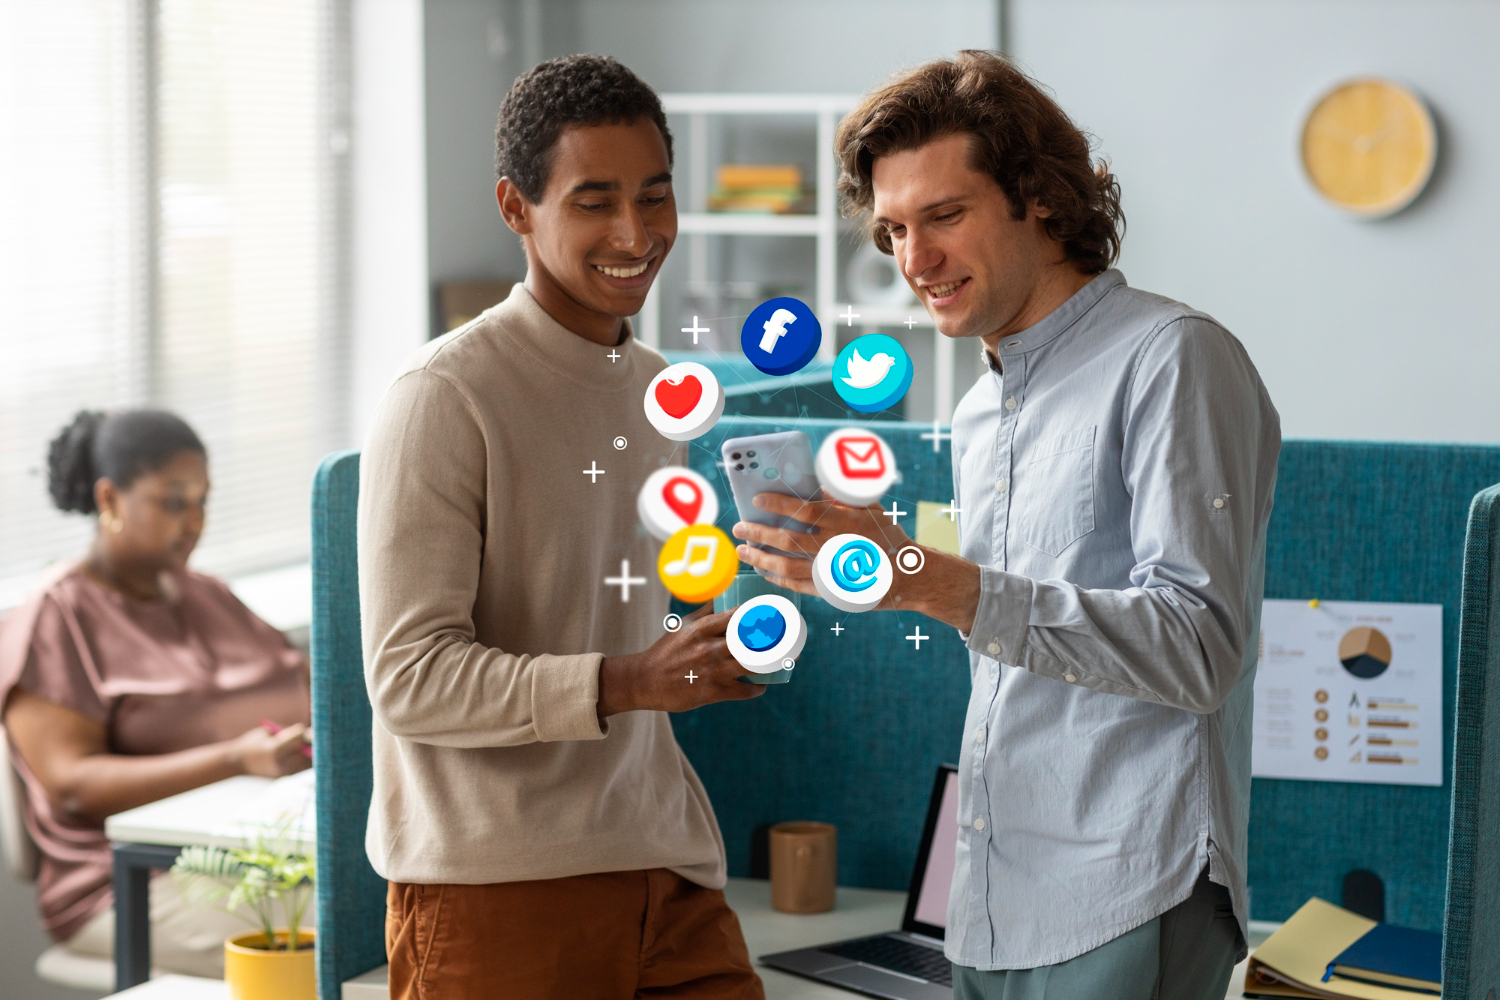 Lucrativas parcerias nas redes sociais: marketing de influência em foco